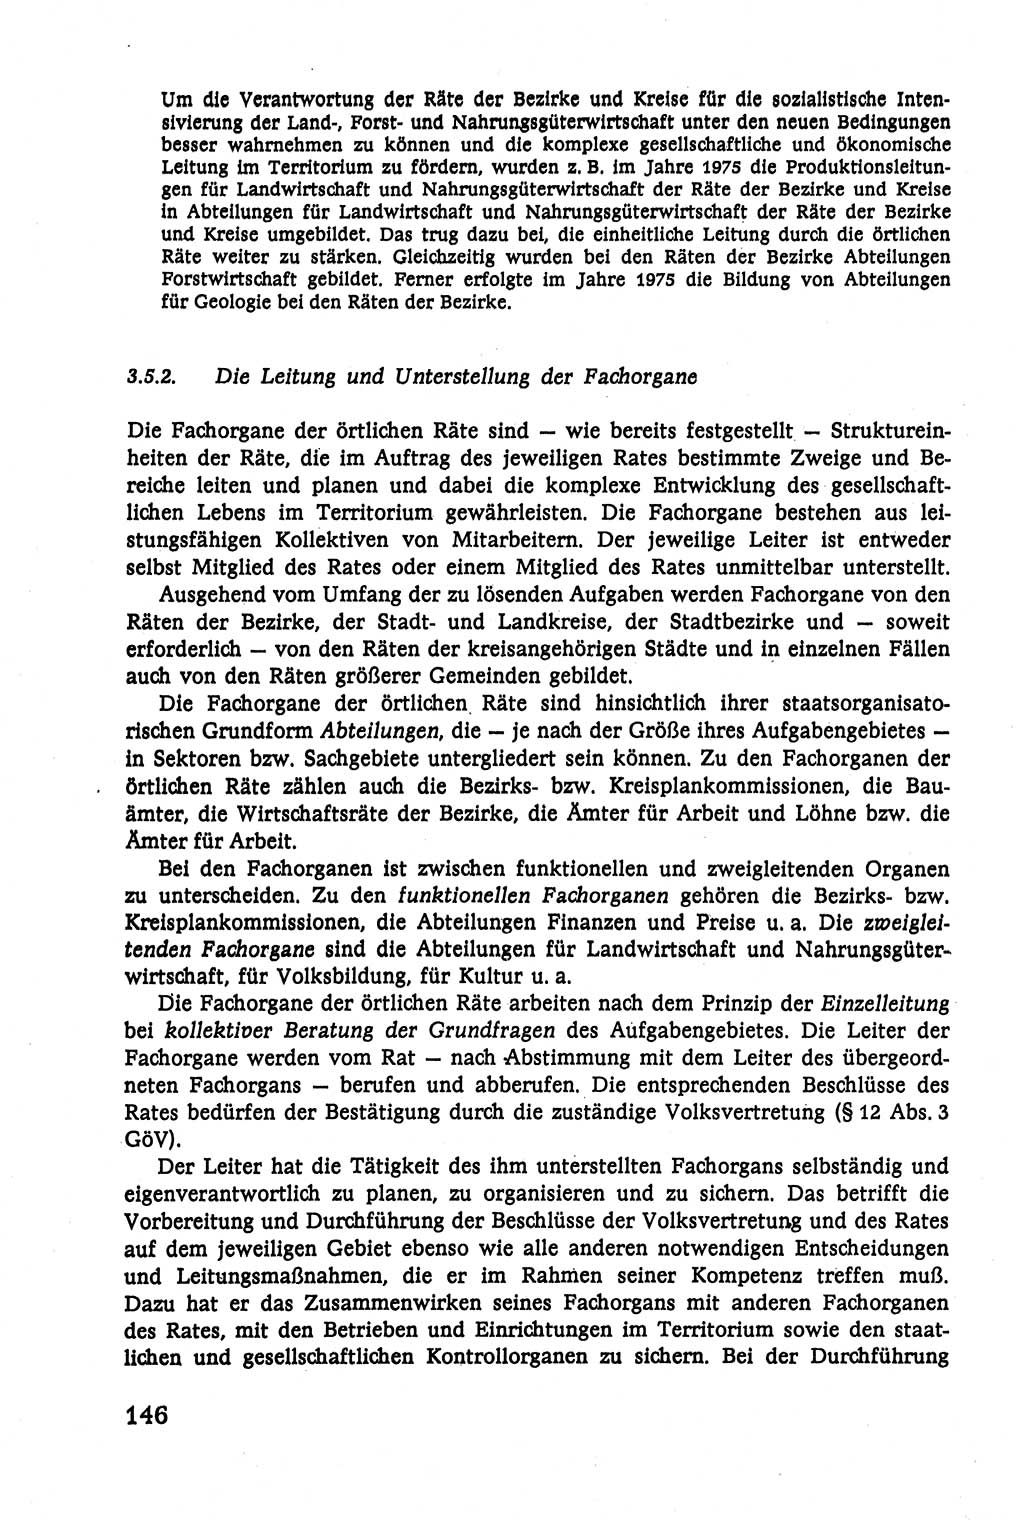 Verwaltungsrecht [Deutsche Demokratische Republik (DDR)], Lehrbuch 1979, Seite 146 (Verw.-R. DDR Lb. 1979, S. 146)